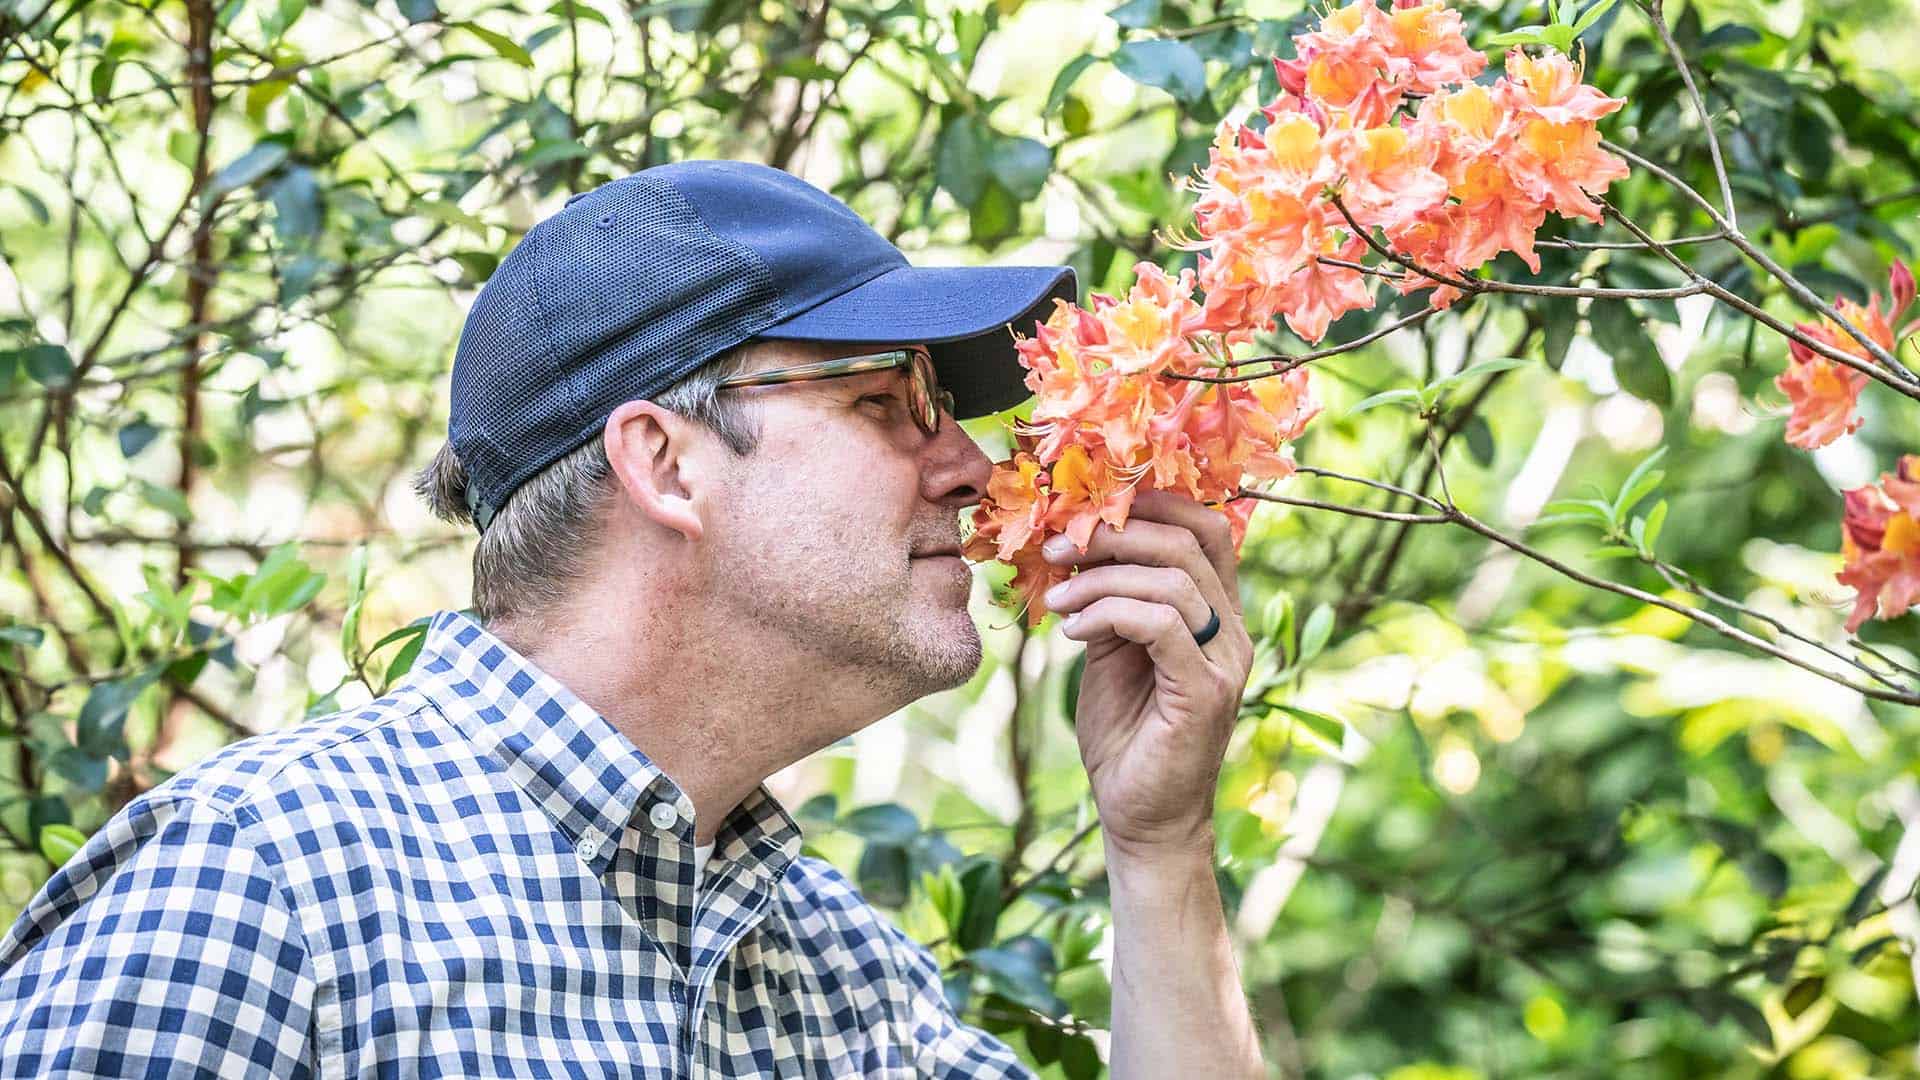 Doug Scott smelling orange flowers from a tree in mental health garden